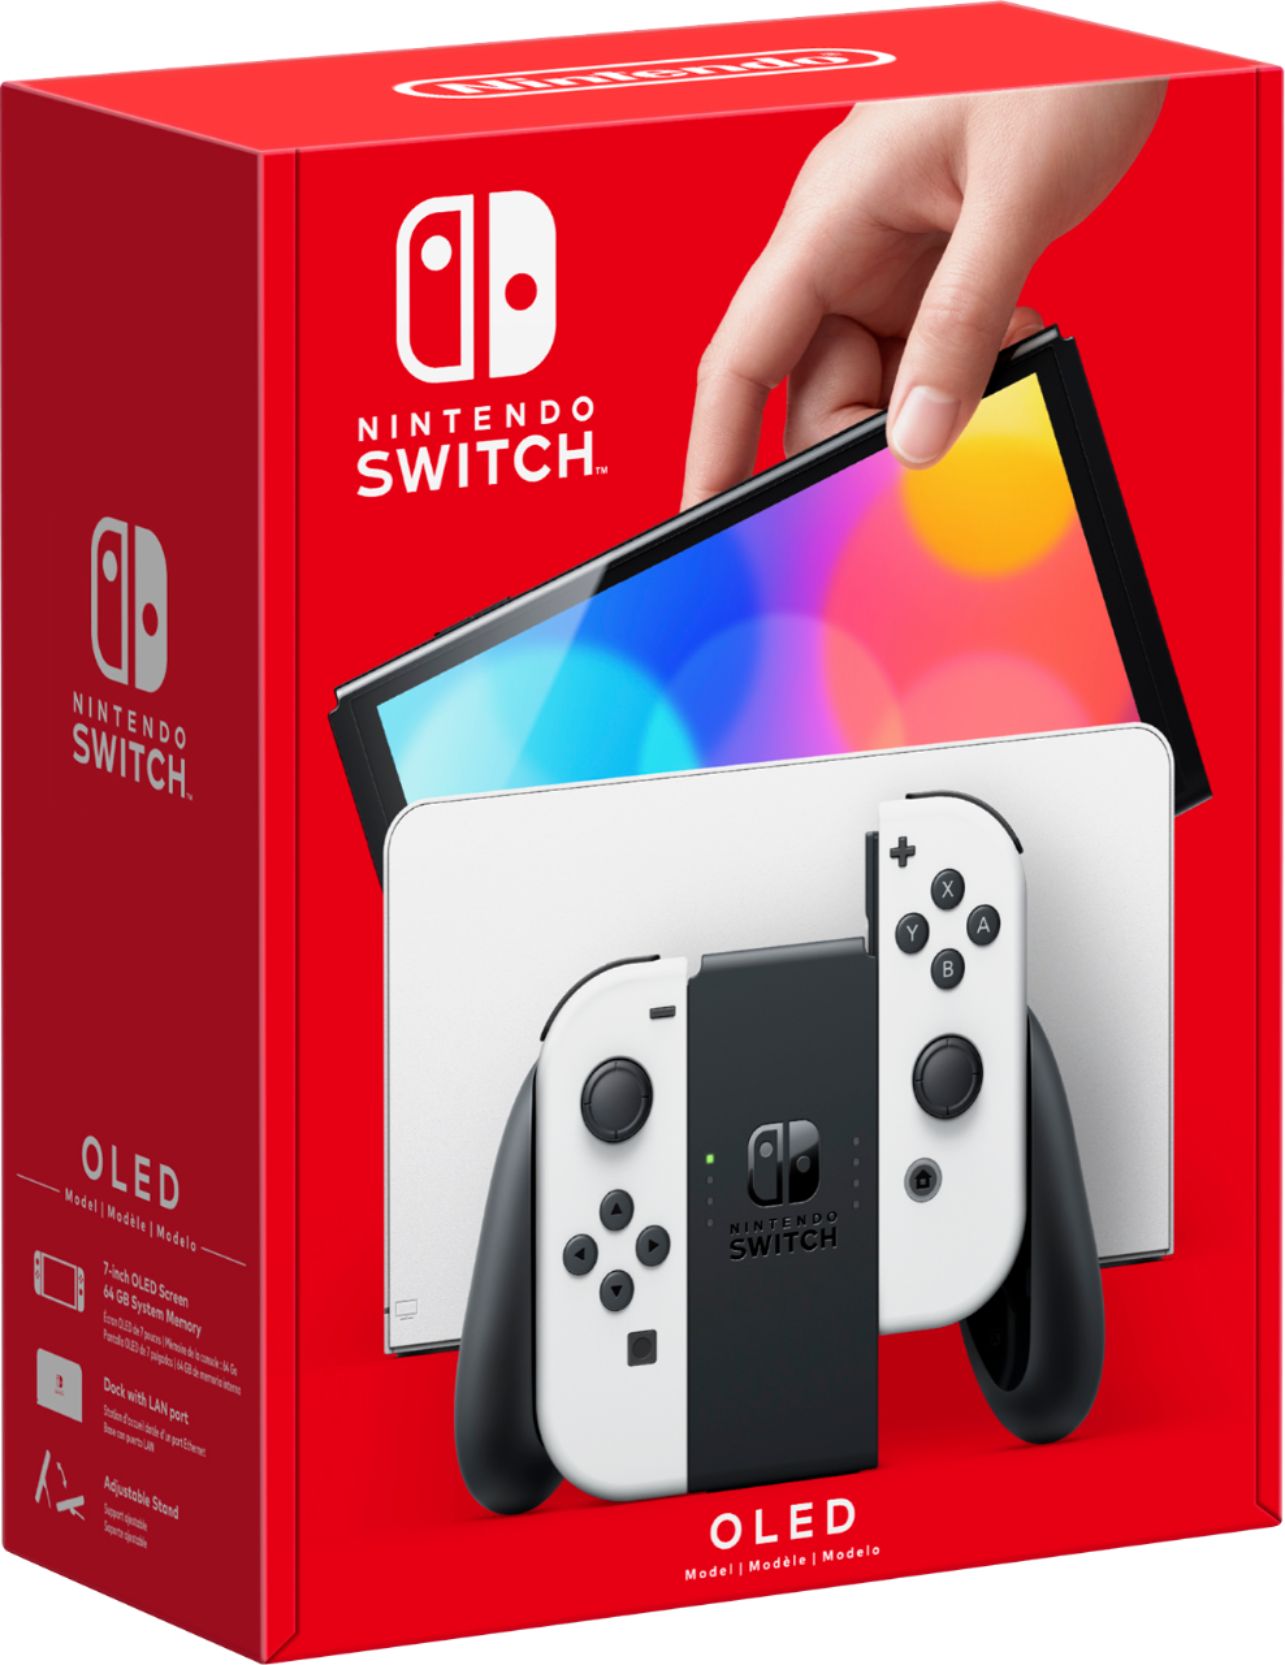 ソフトパープル Nintendo Switch NINTENDO SWITCH JOY-CON - 通販 